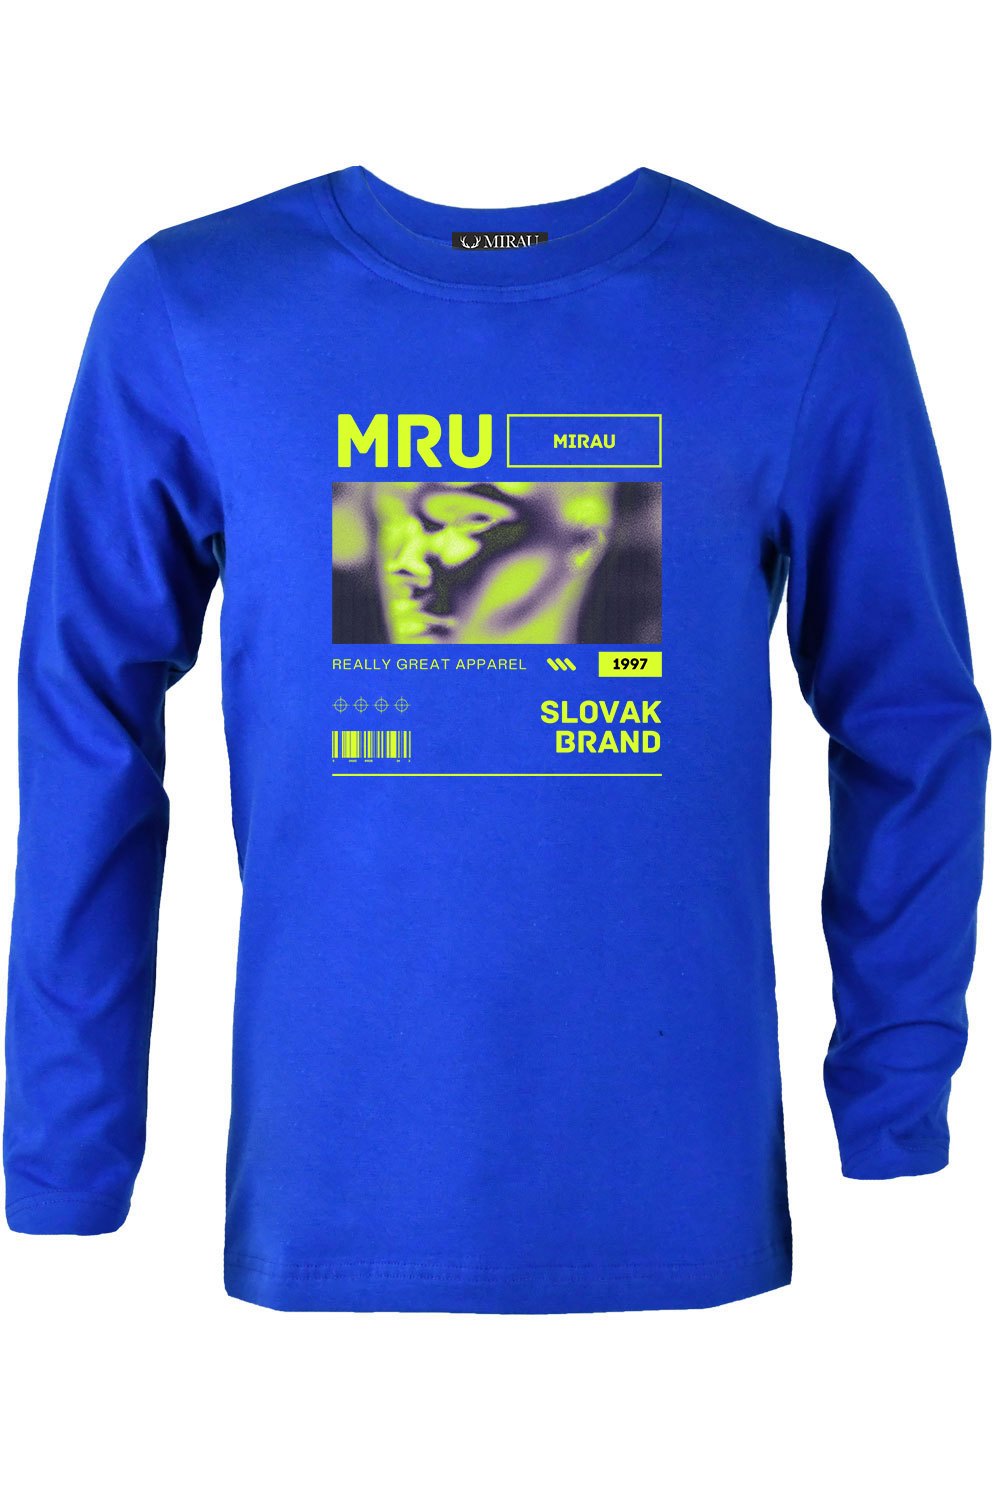 Tričko - MRU MIRAu (výpredaj)